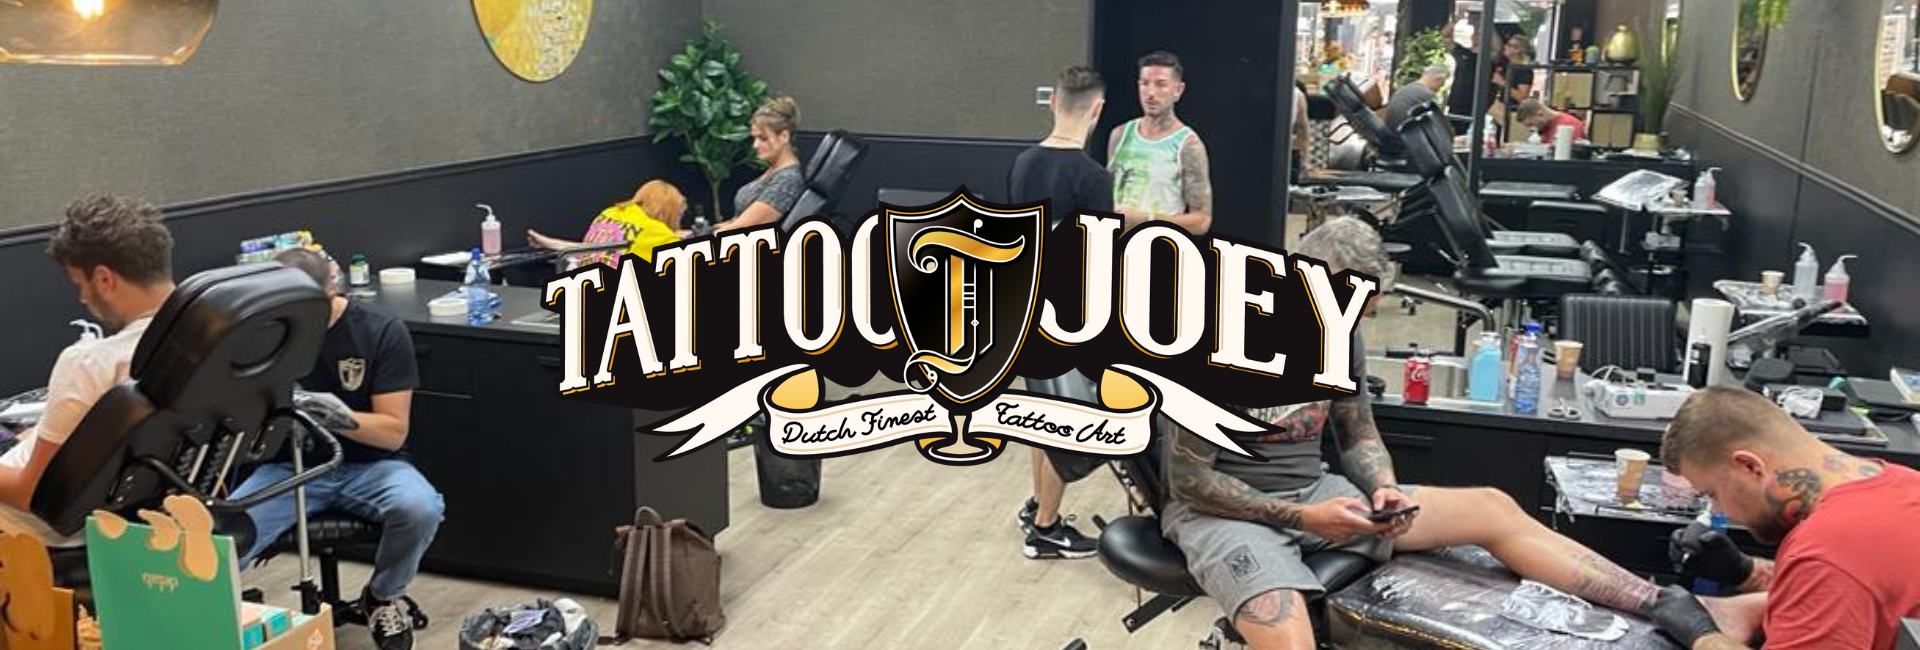 tattoo joey tattooshop